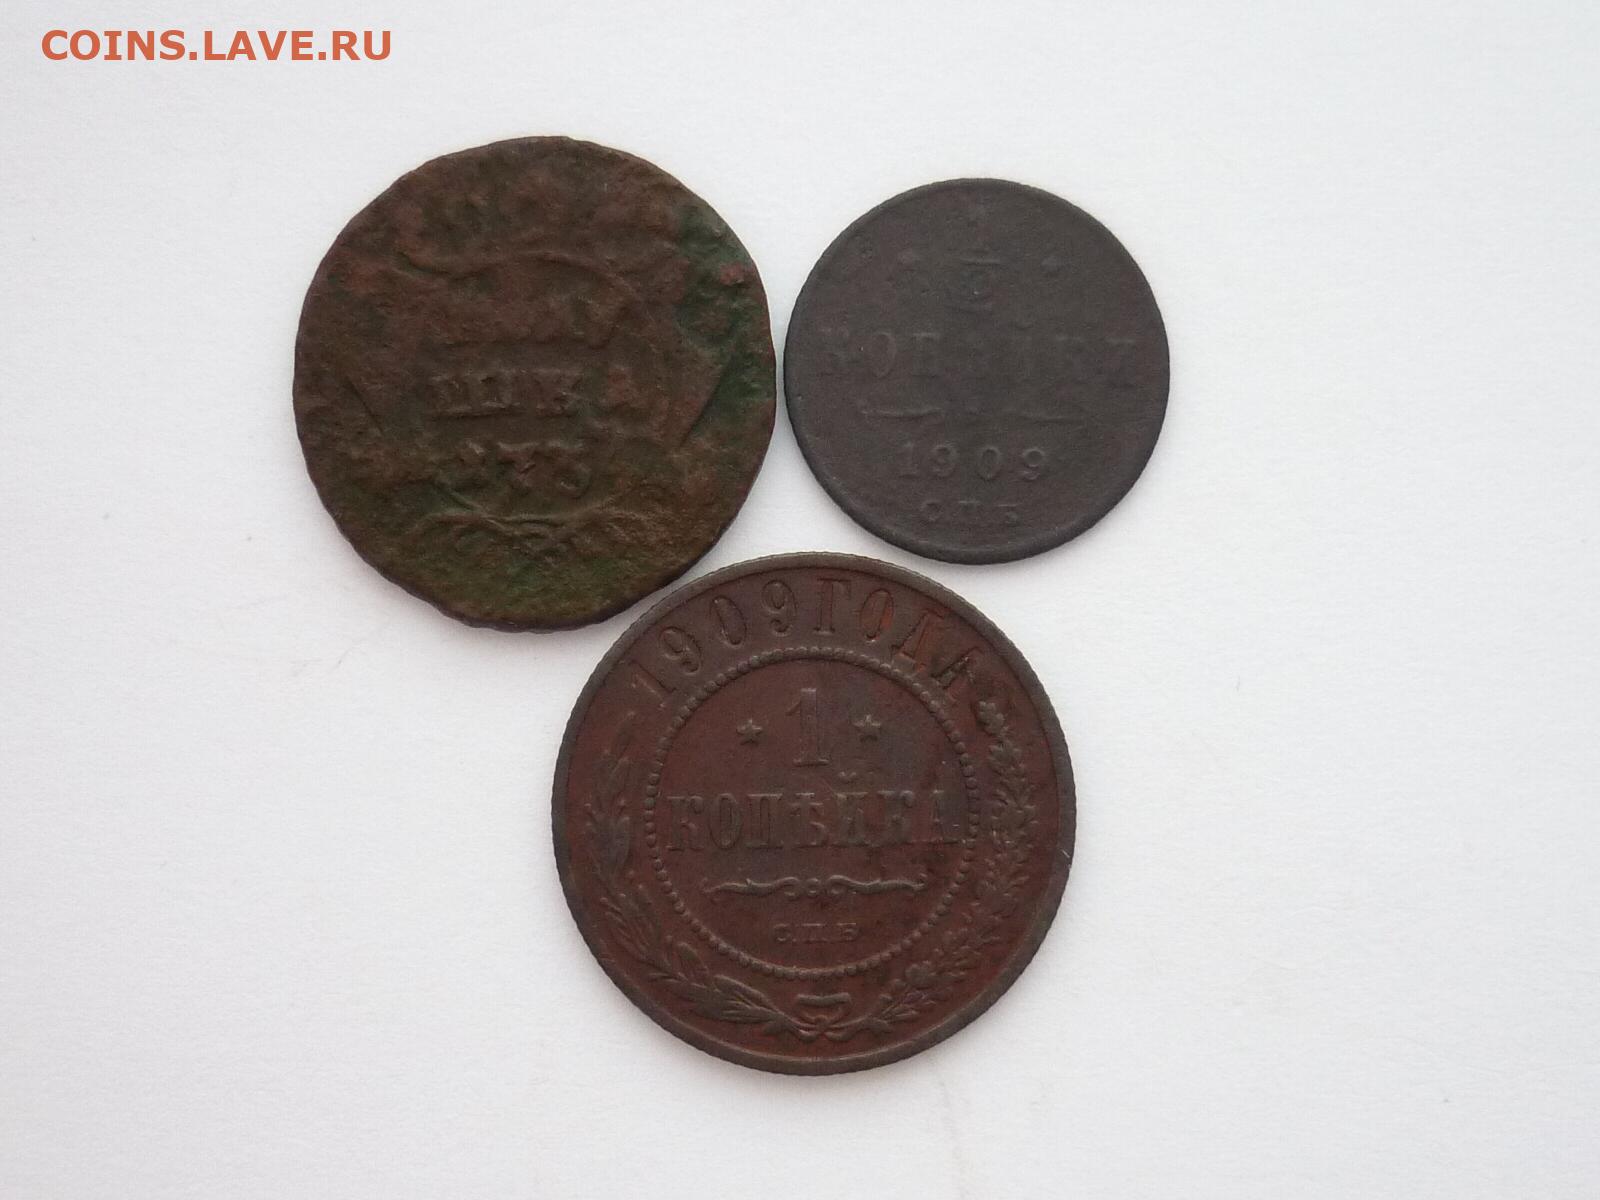 На столе лежит 3 монеты